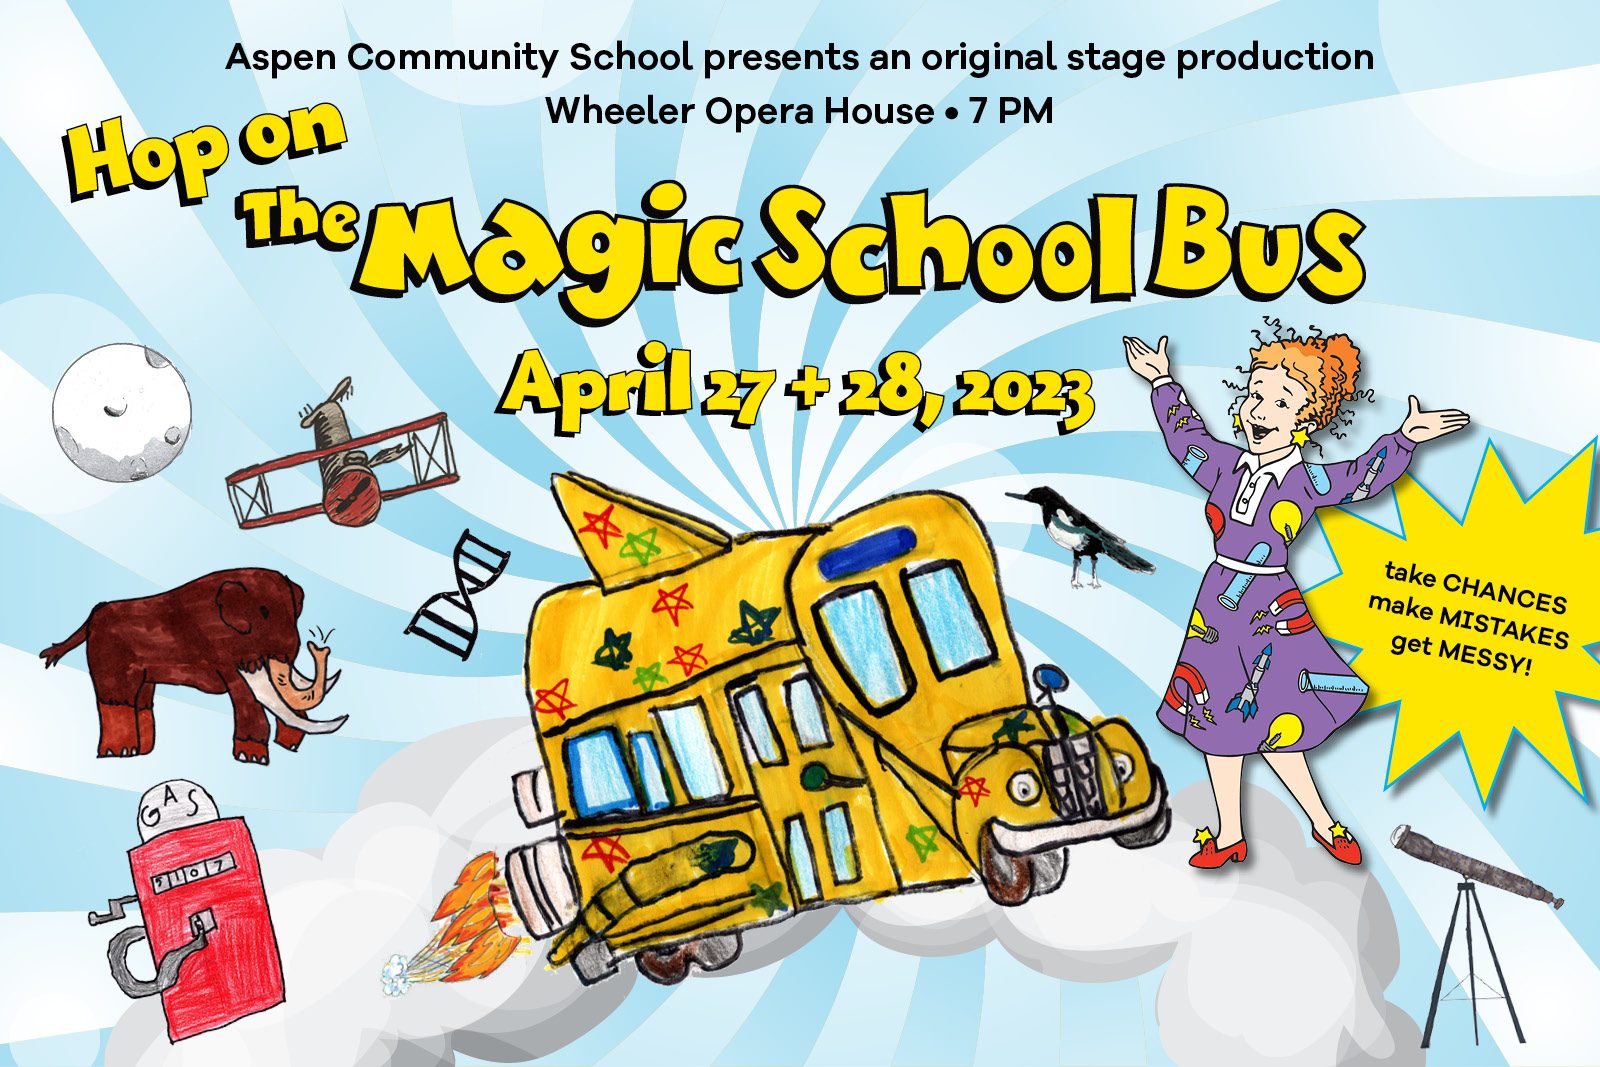 Aspen Community School presents Hop on the Magic School Bus April 27-28